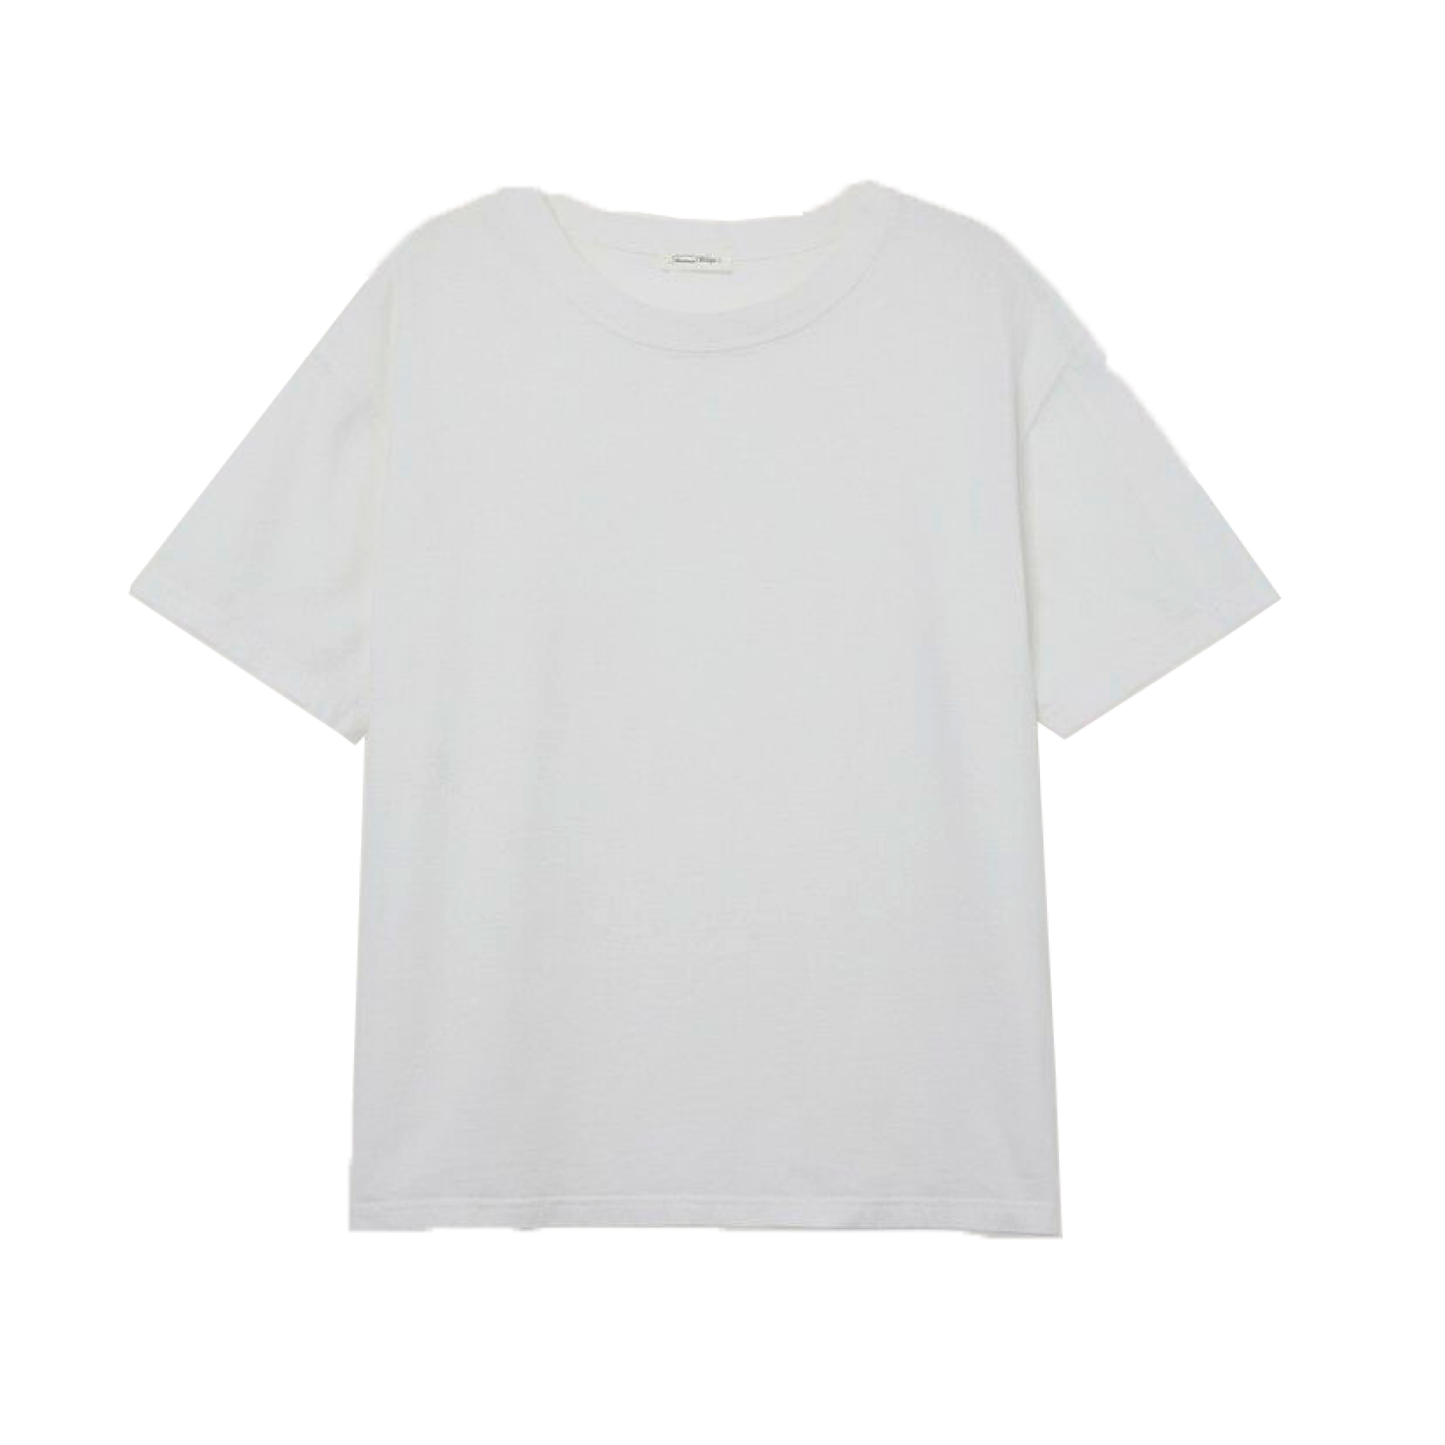 Fizvalley T-Shirt, White 